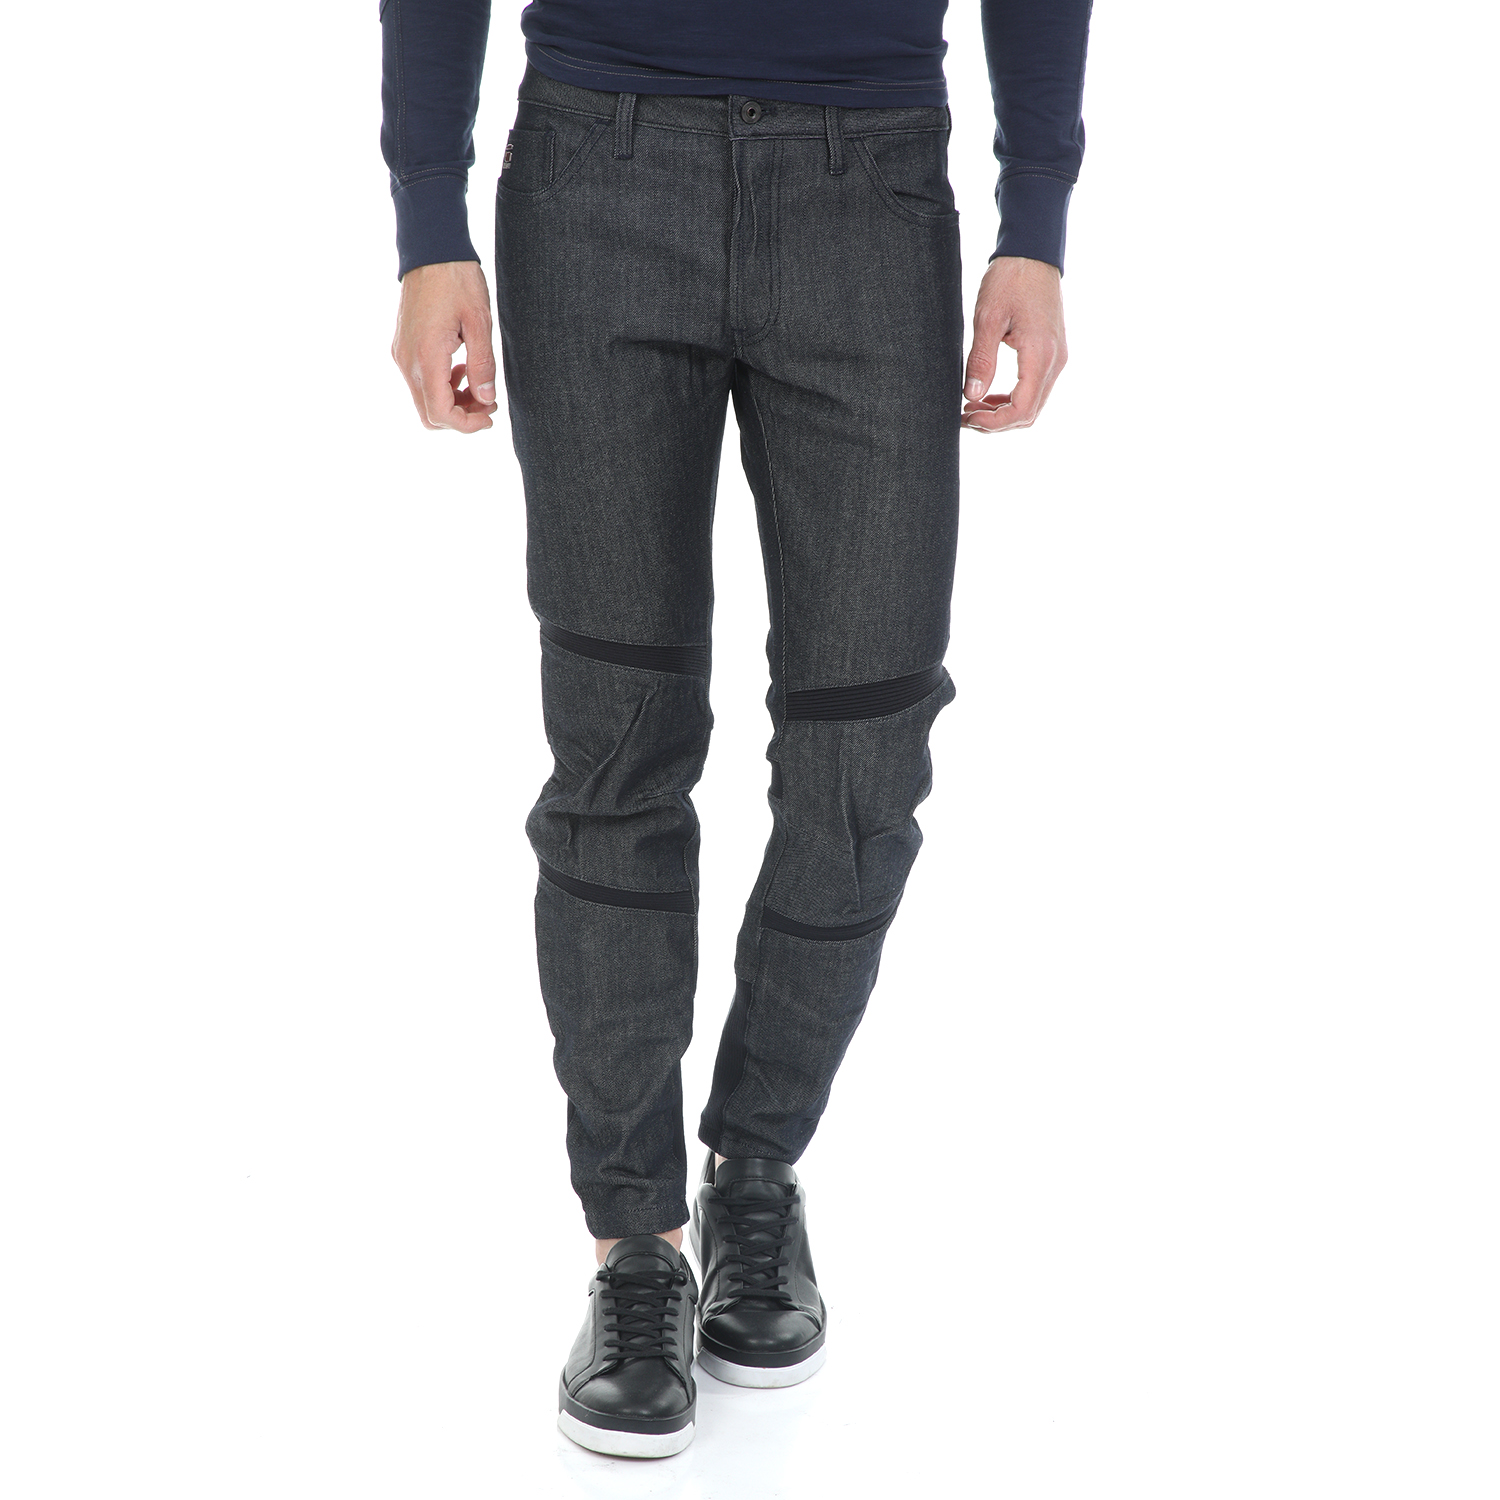 Ανδρικά/Ρούχα/Τζίν/Skinny G-STAR RAW - Ανδρικό jean παντελόνι G-STAR RAW MOTAC DECONSTRUCTED 3D SLIM μπλε